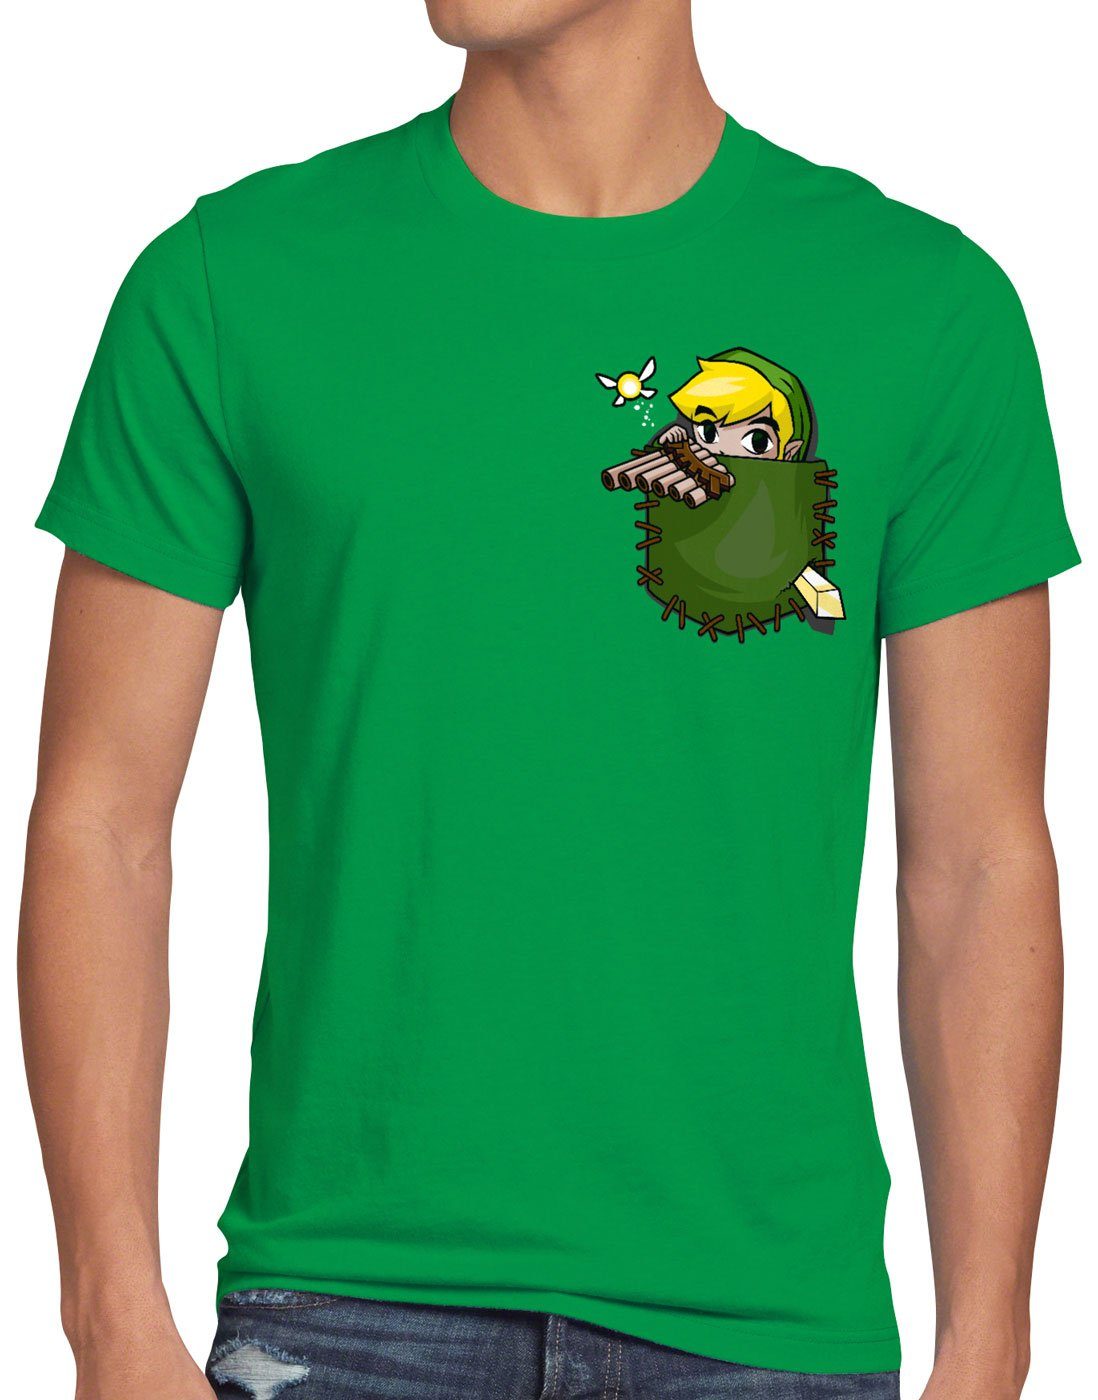 style3 Print-Shirt T-Shirt Brusttasche the ocarina breath snes switch grün Link of Herren wild